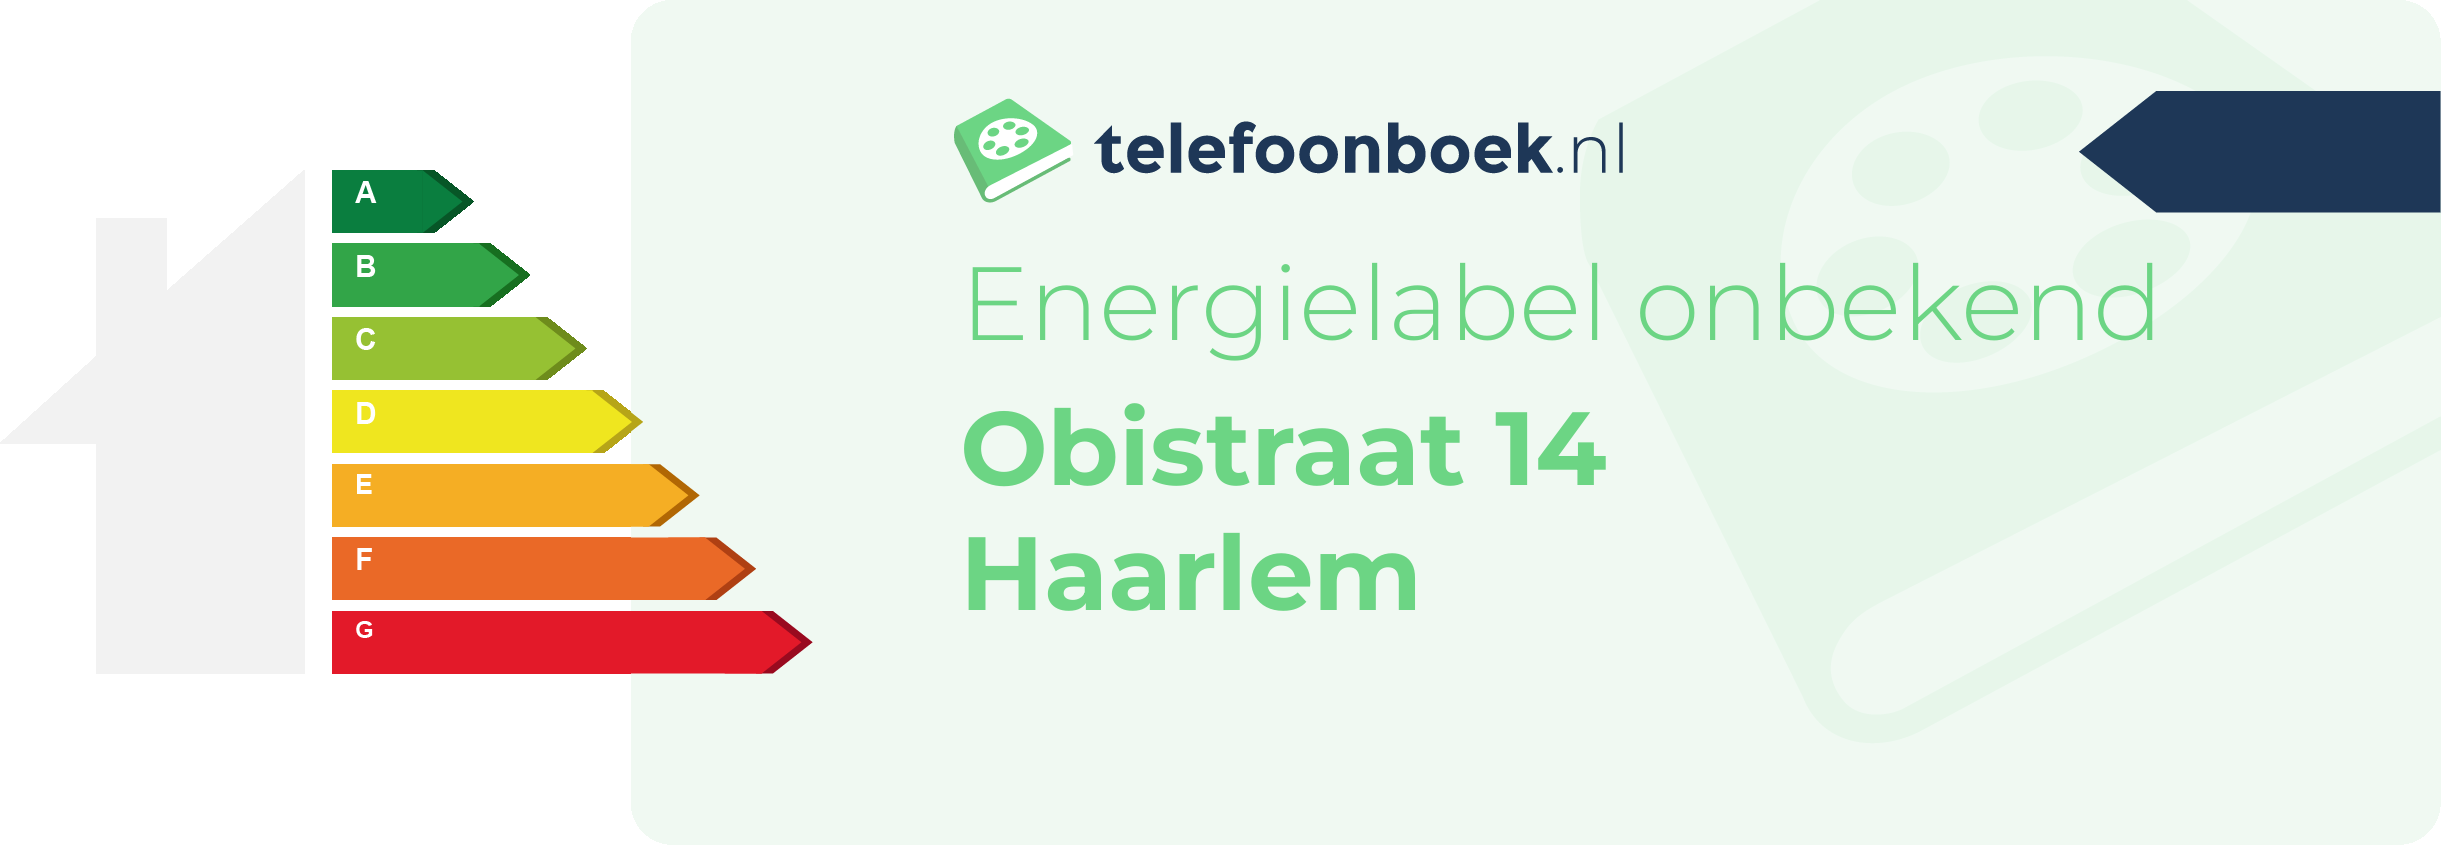 Energielabel Obistraat 14 Haarlem